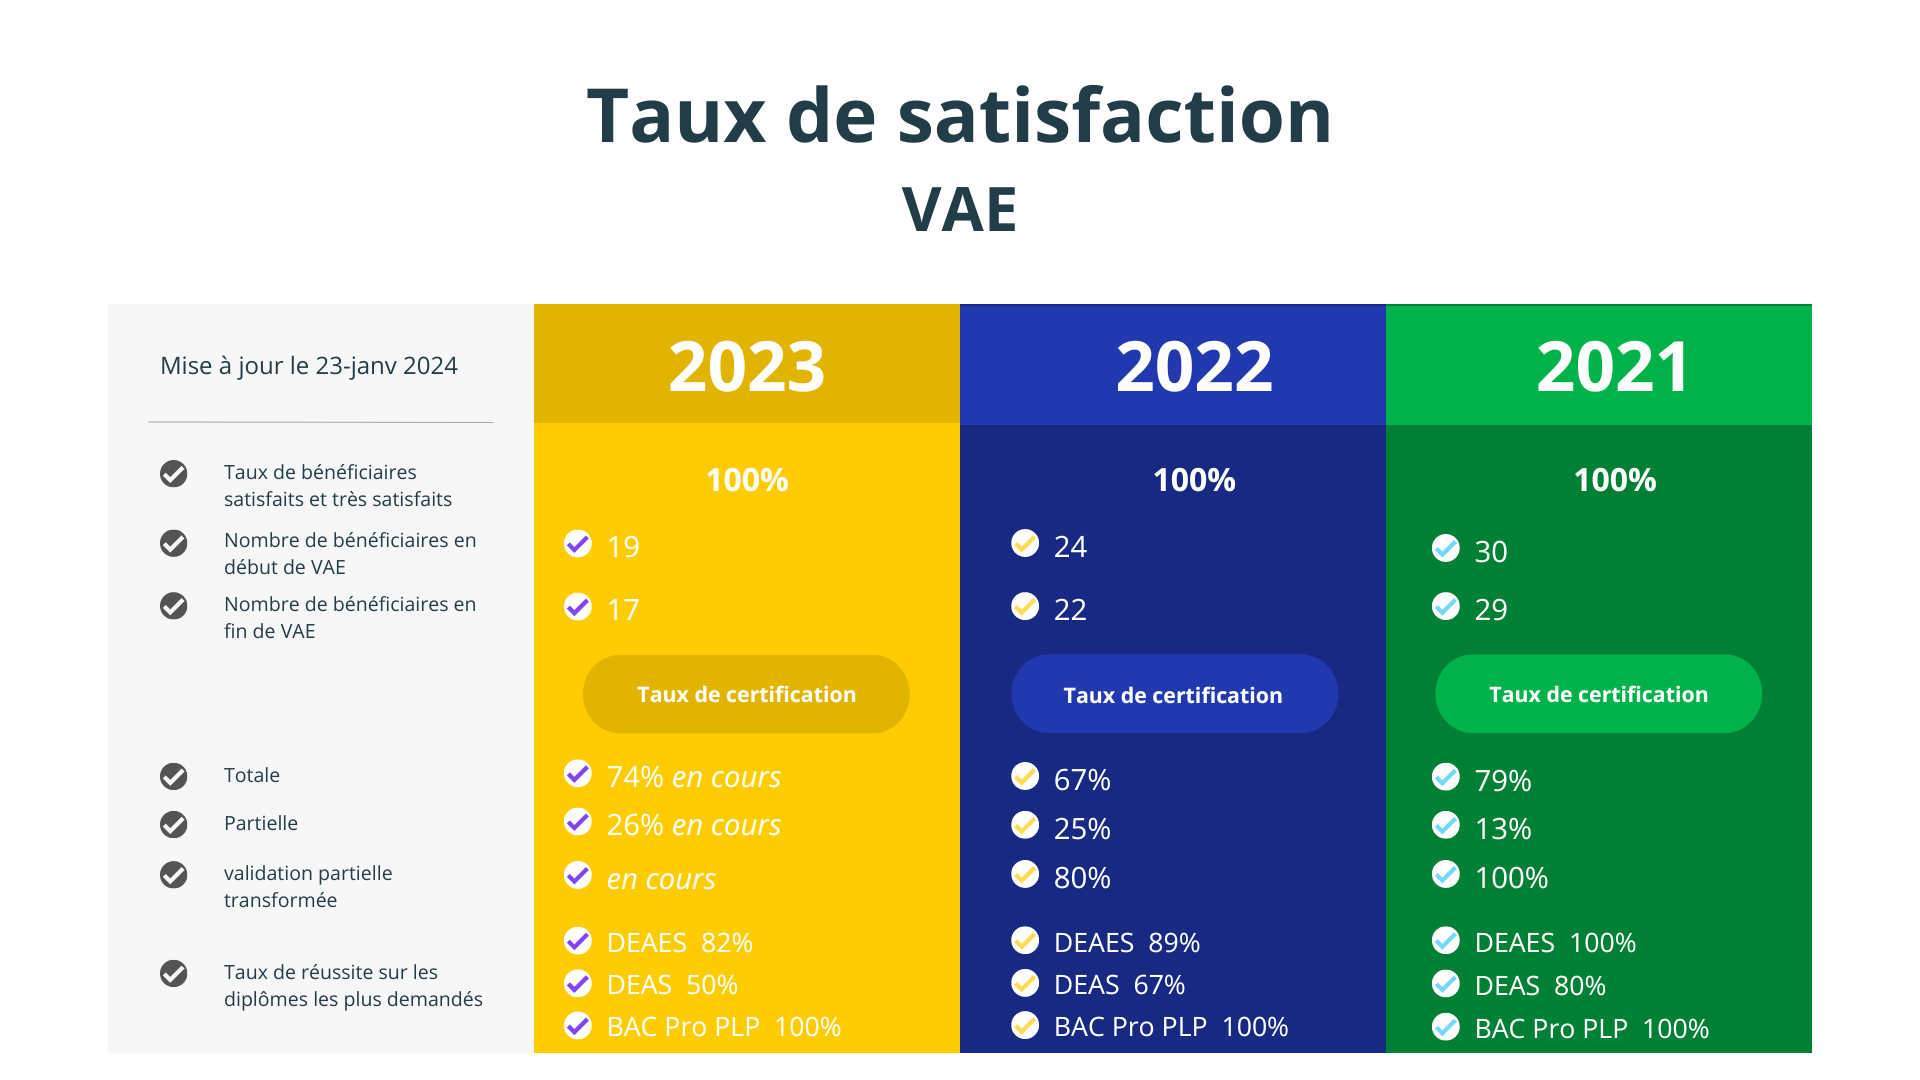 Tx satisfaction VAE 2023